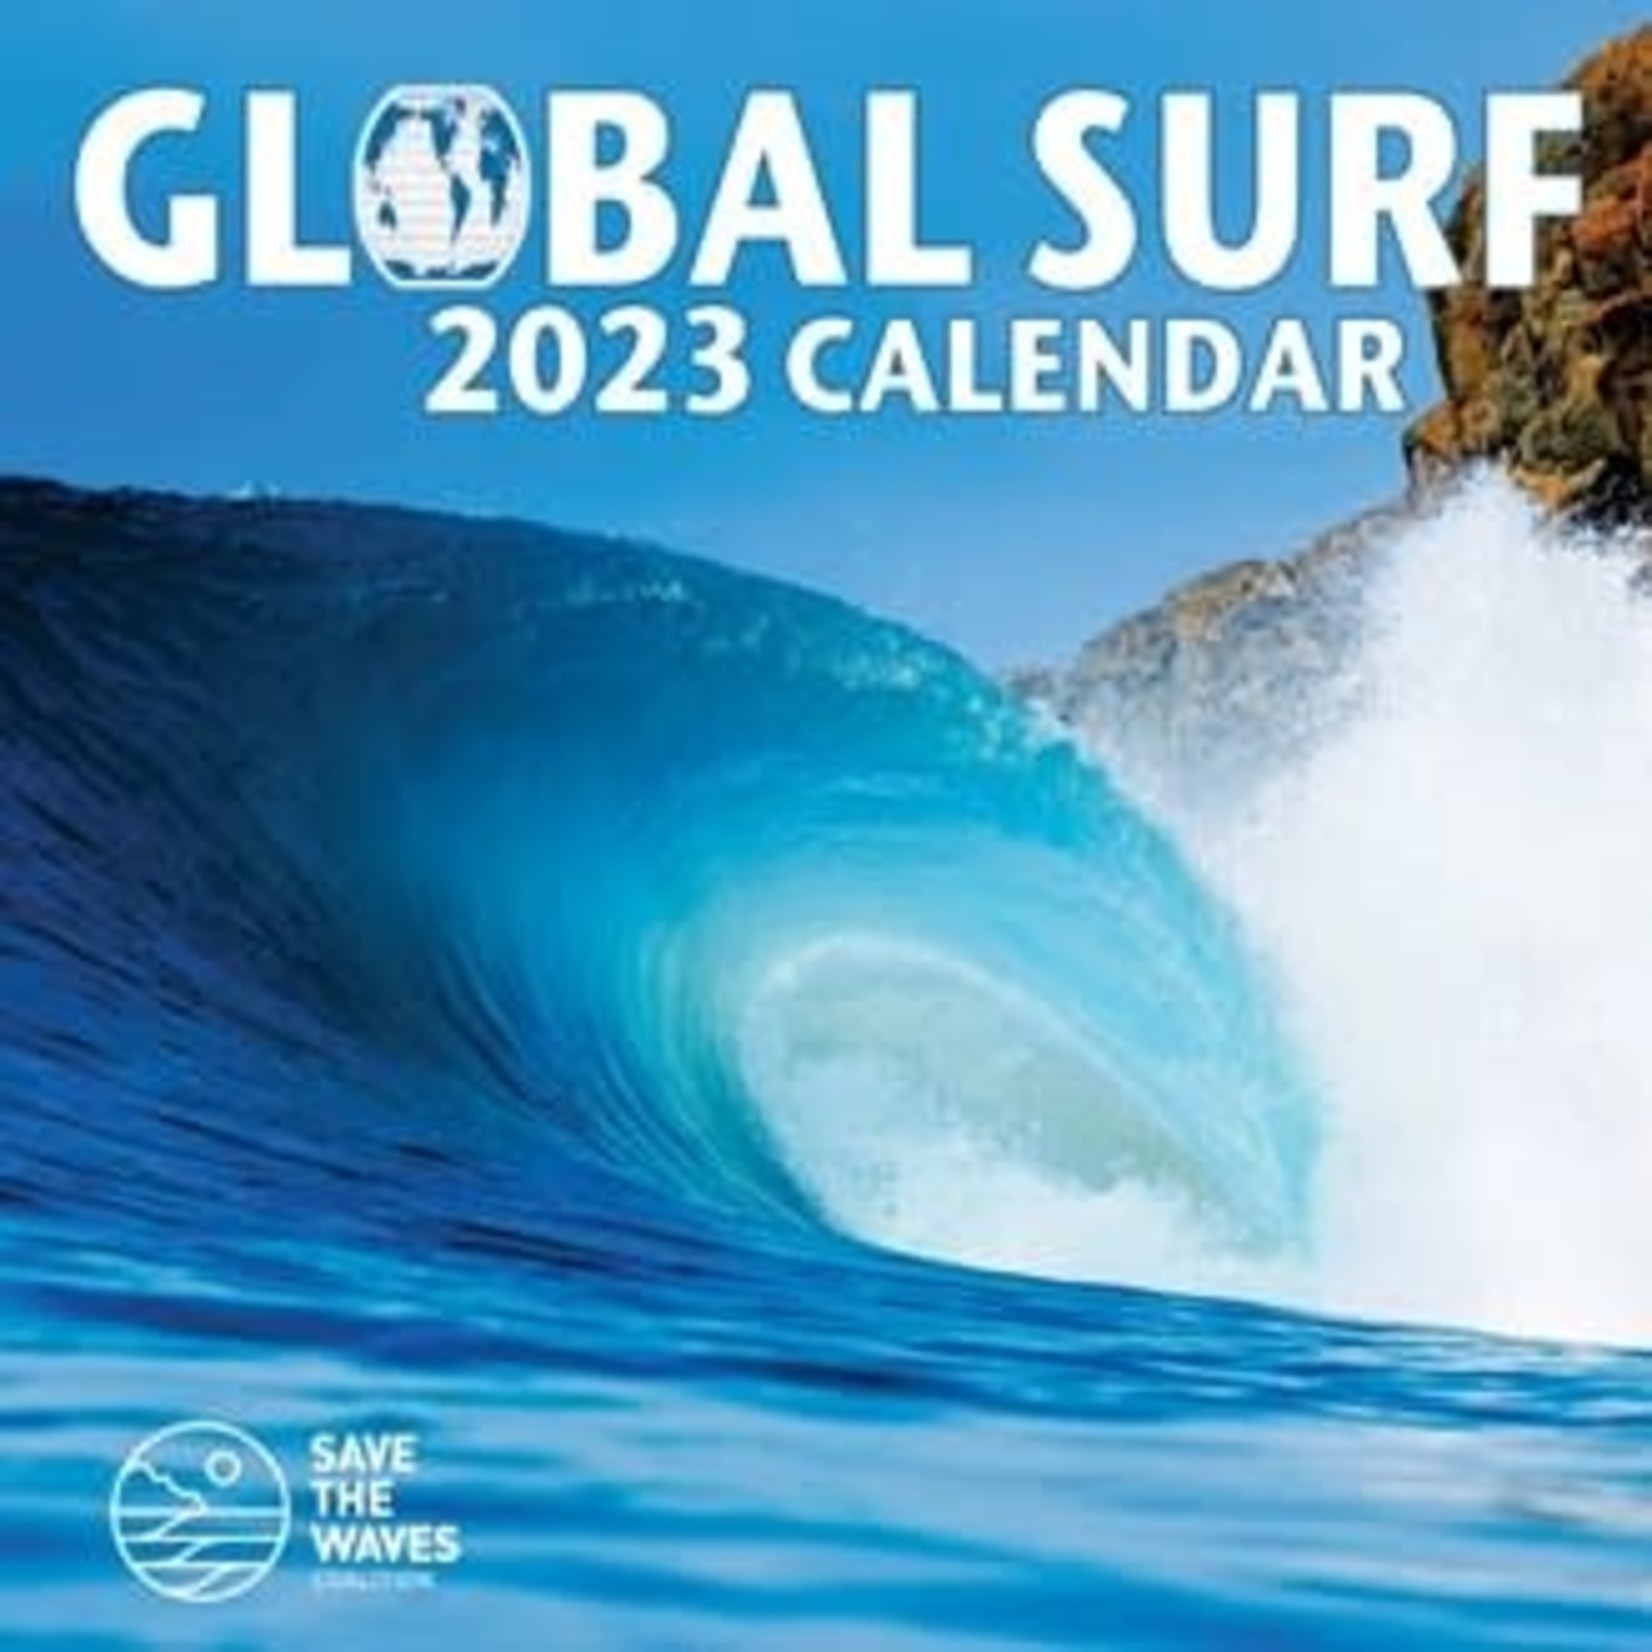 Global Surf Global Surf Calendar 2023